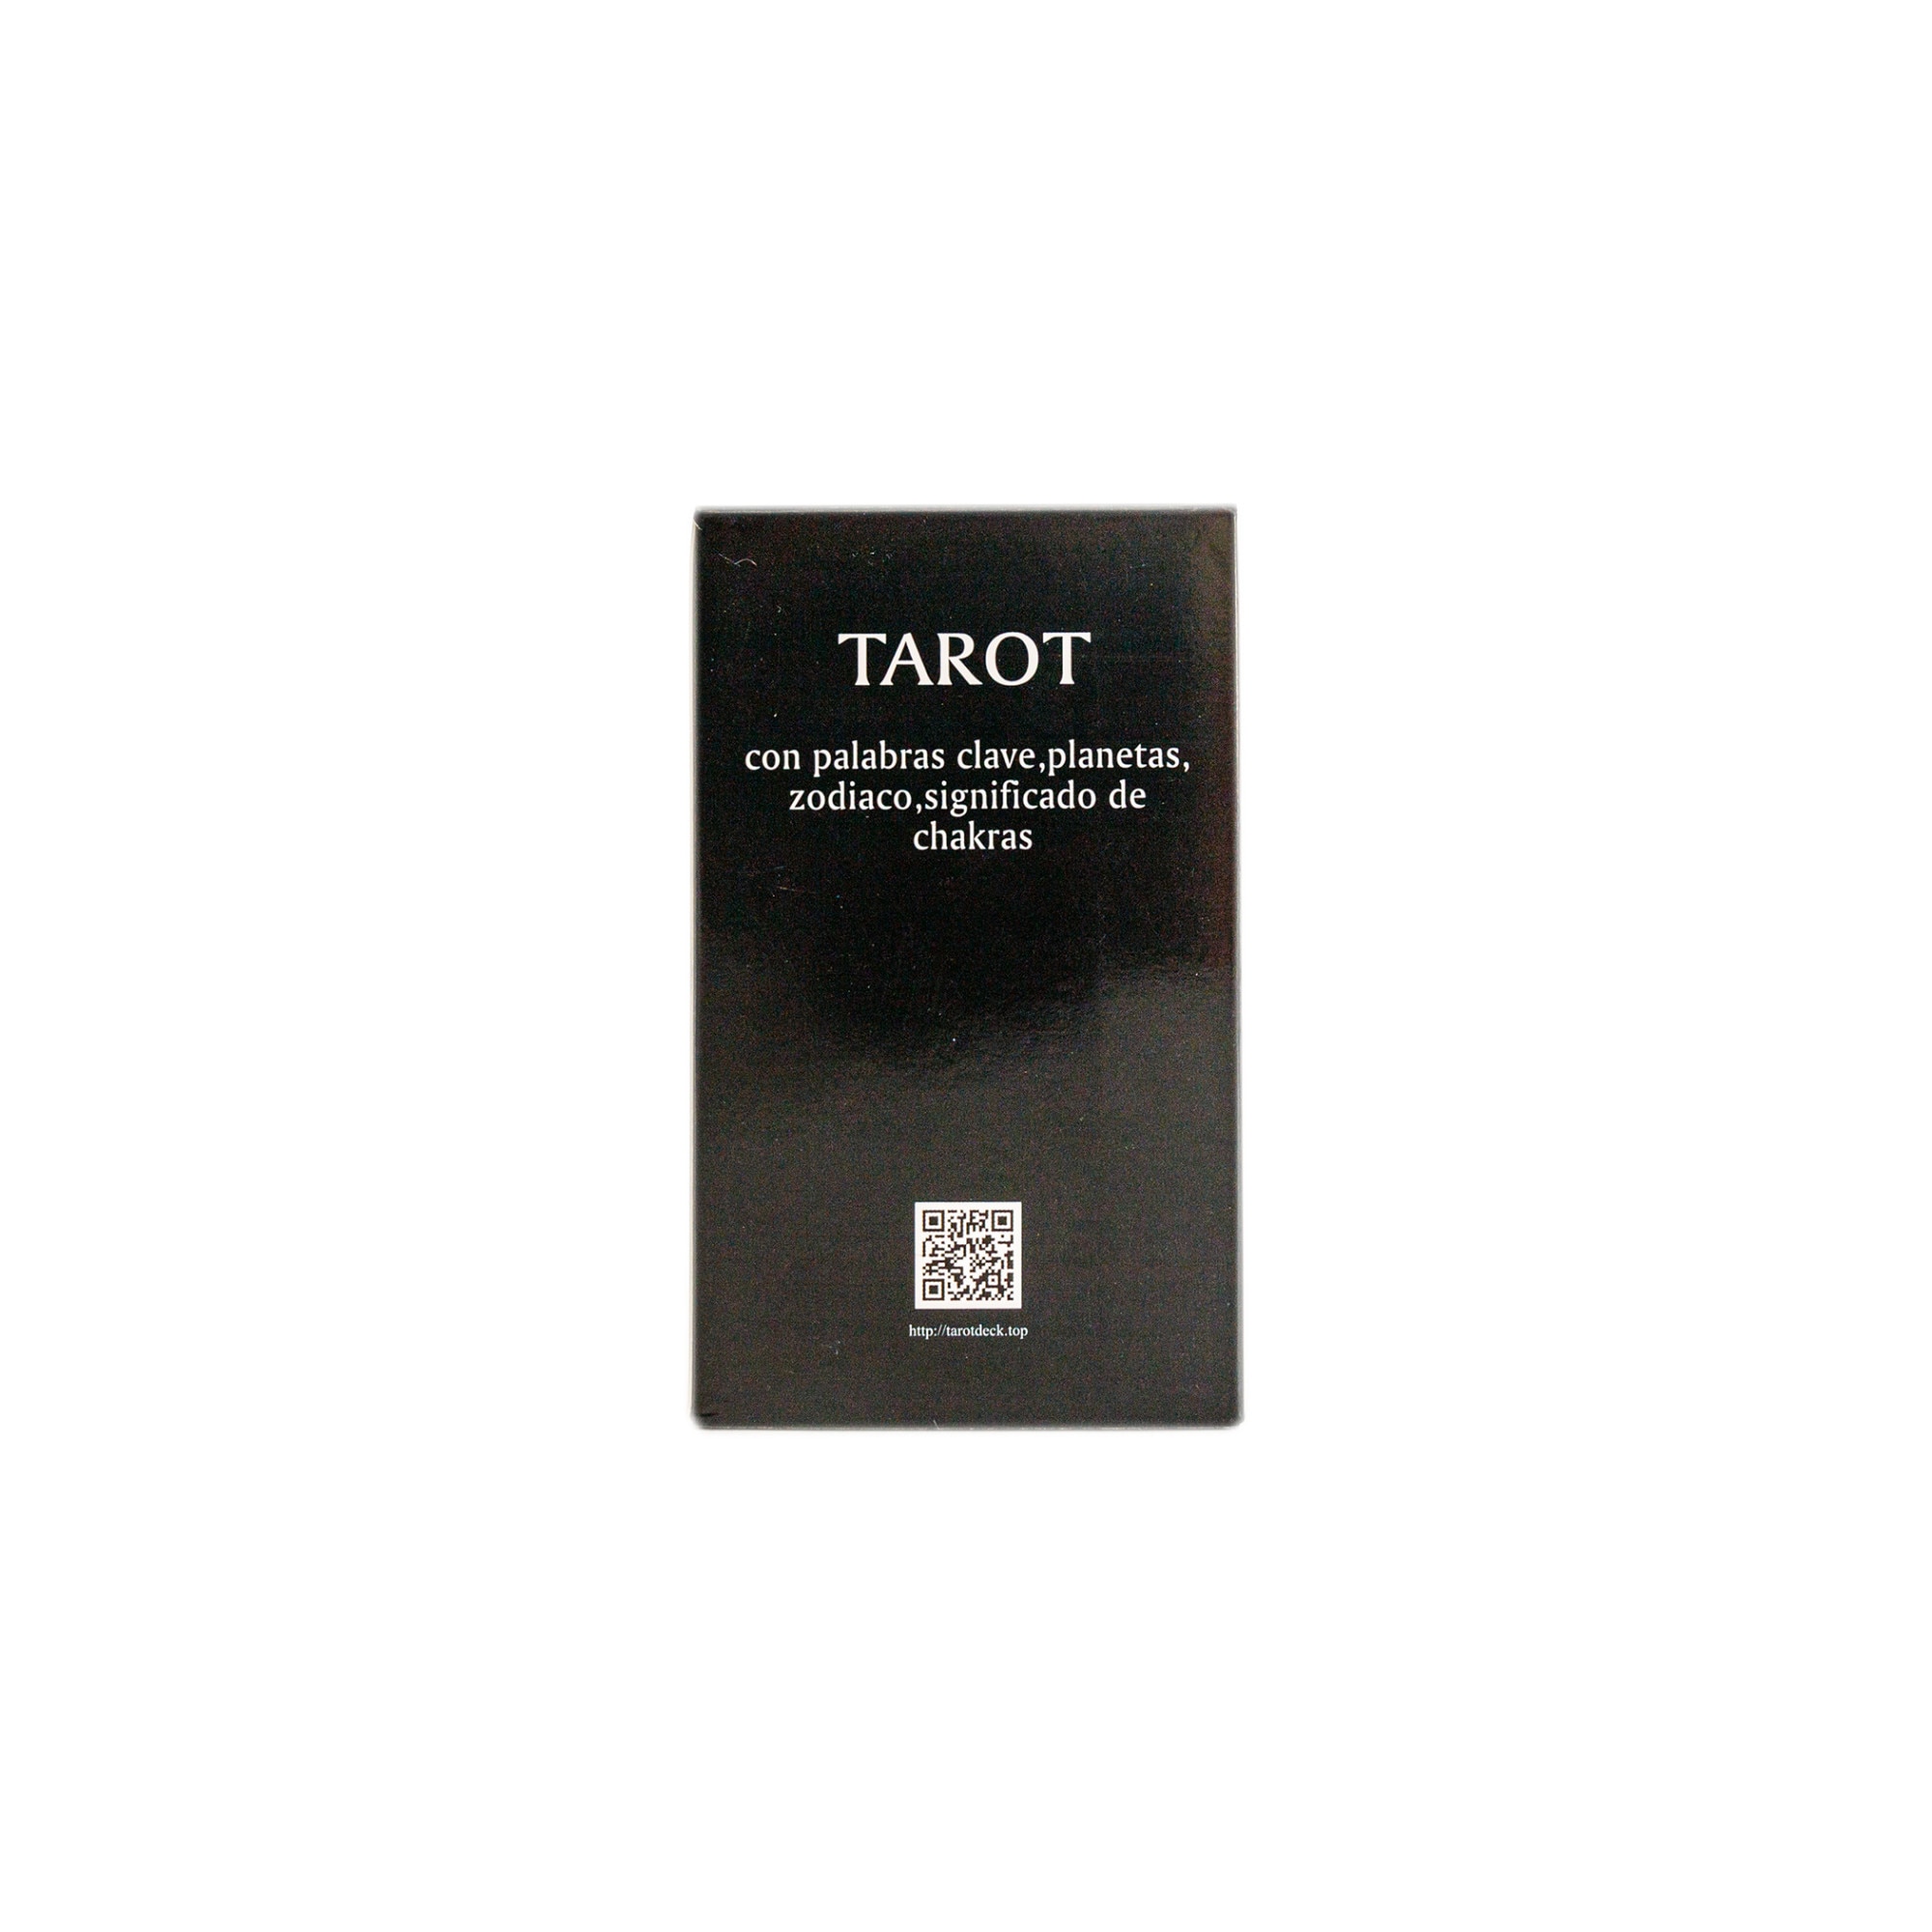 Tarot Rider Waite Con Significados En Español 10x6 Cm - $ 145